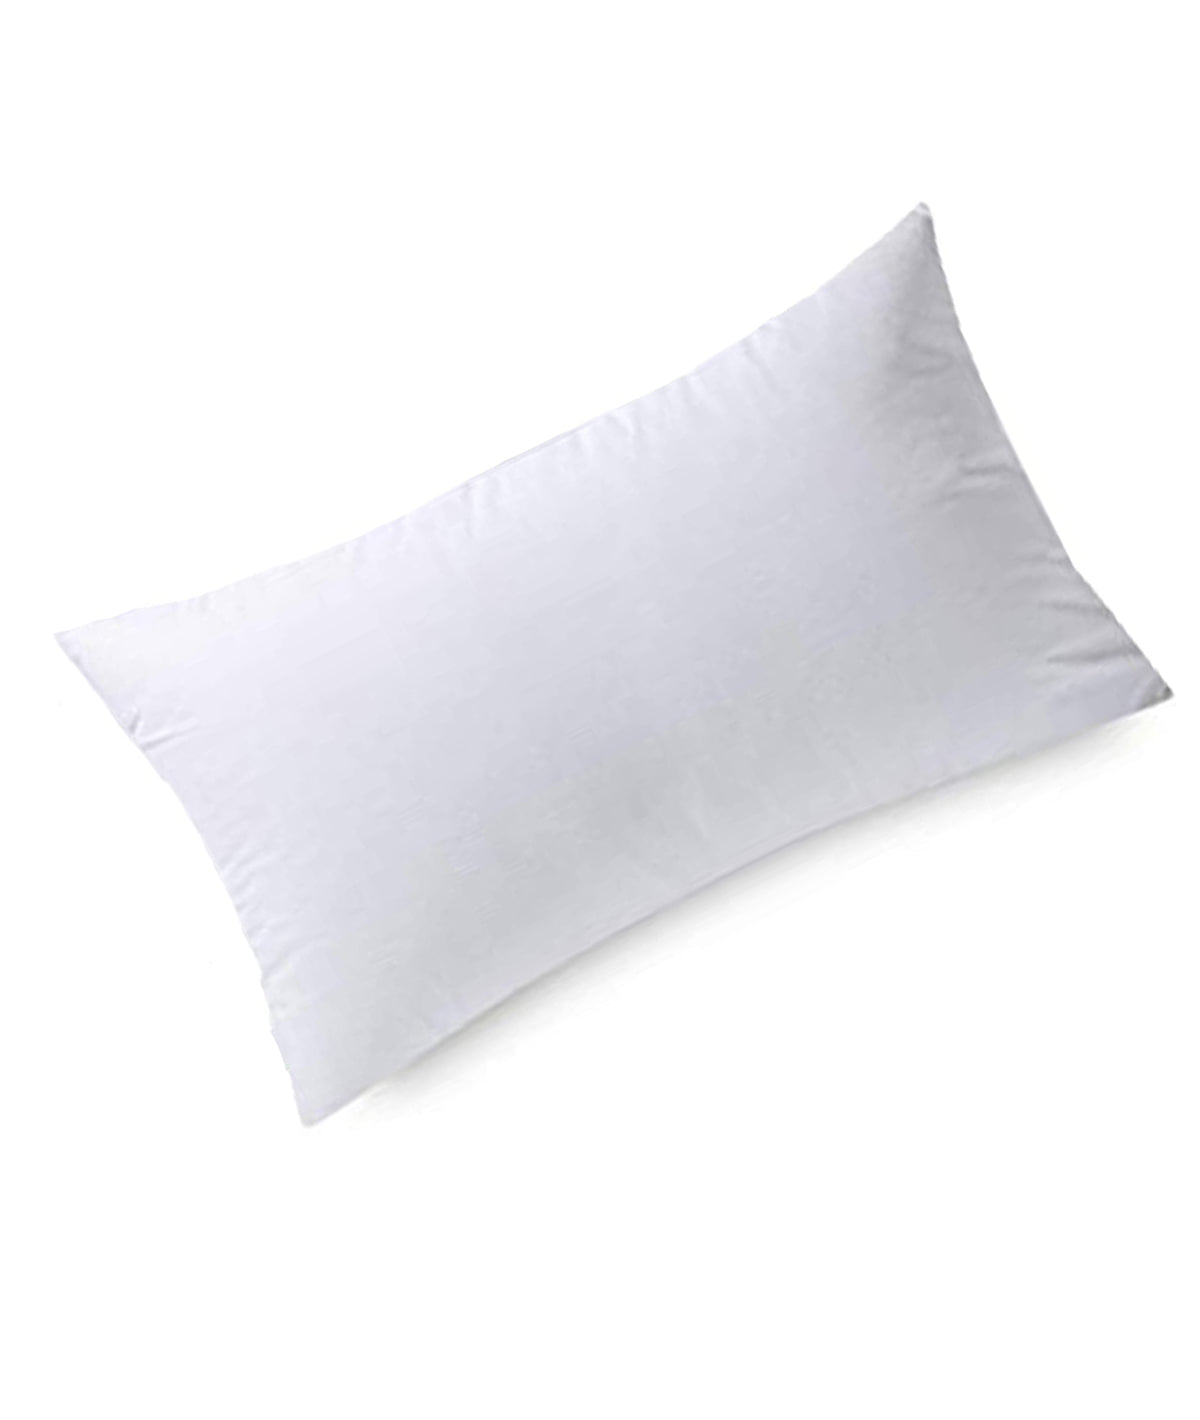 Pluchi Rectangular Pillow Filler (40 cm X 60 cm) (16" x 24")